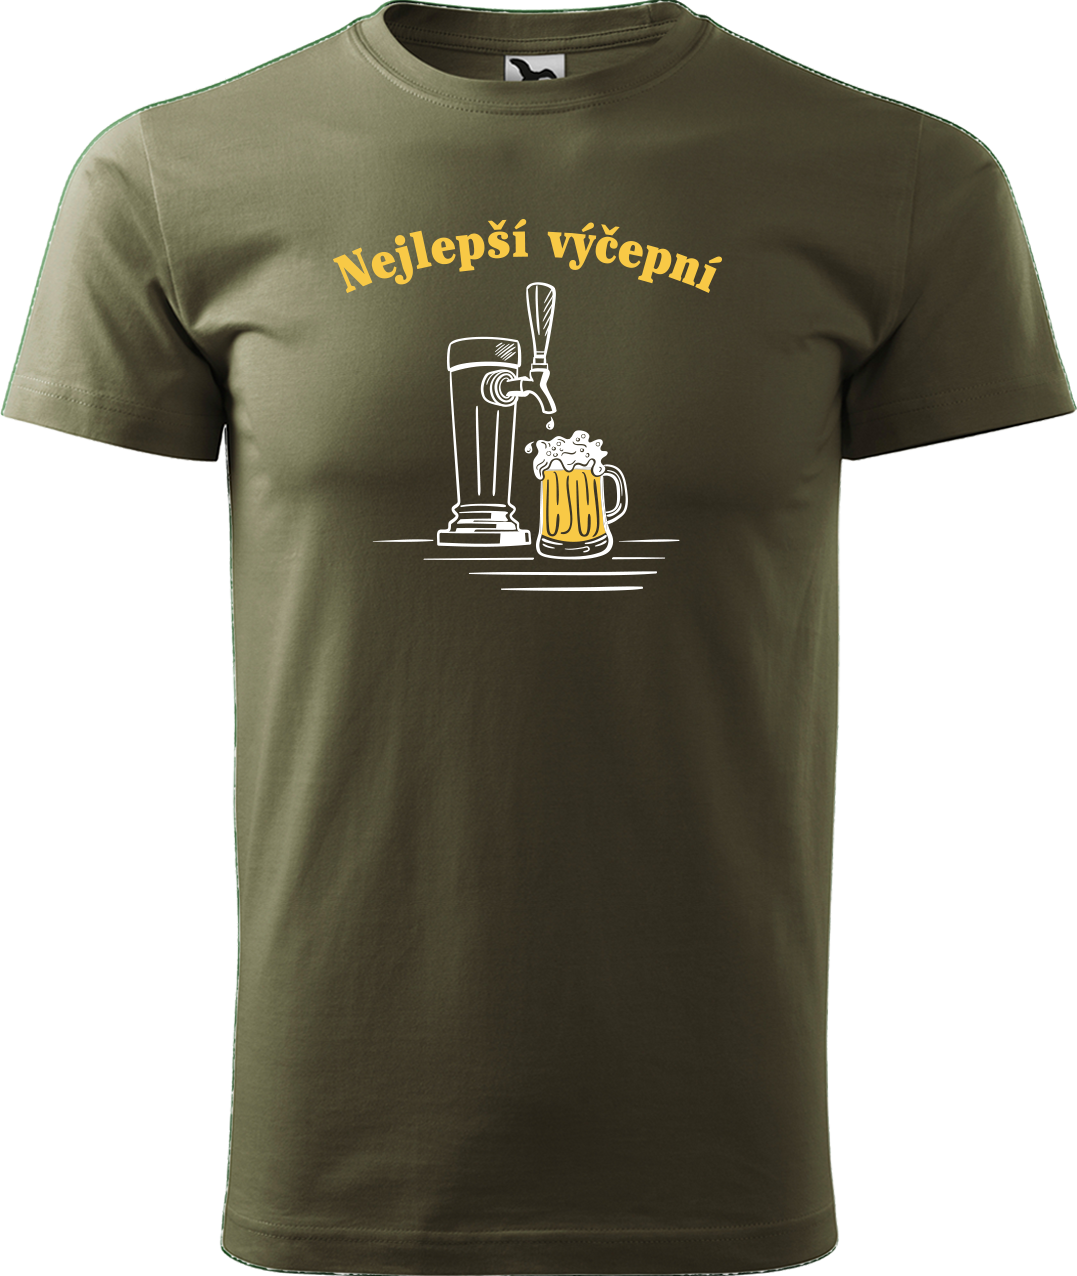 Pivní tričko - Nejlepší výčepní Velikost: L, Barva: Military (69)